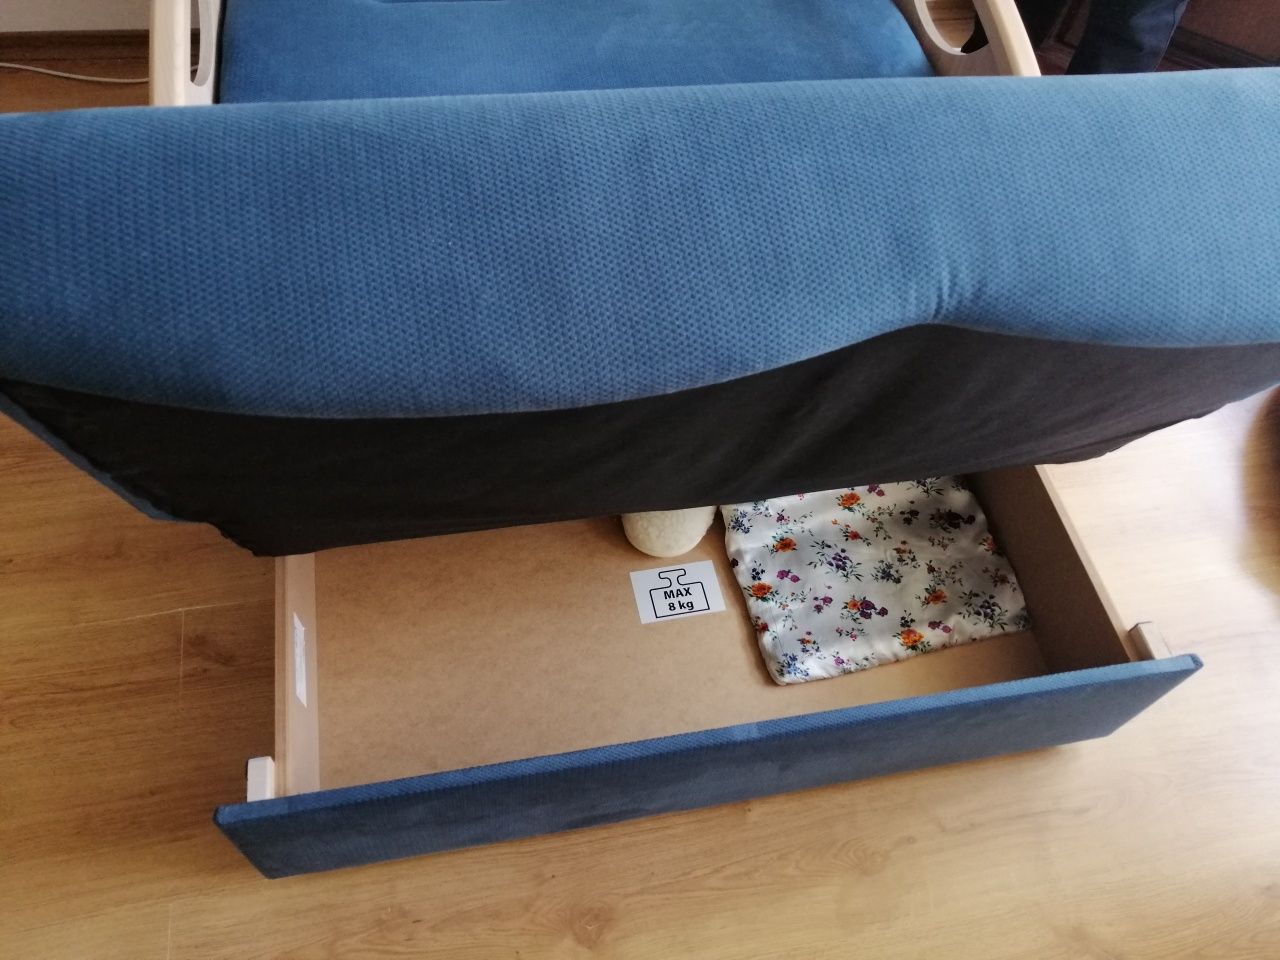 Sofa Brw ida łóżko rozkładana wersalka niebieska blackredwhite brw